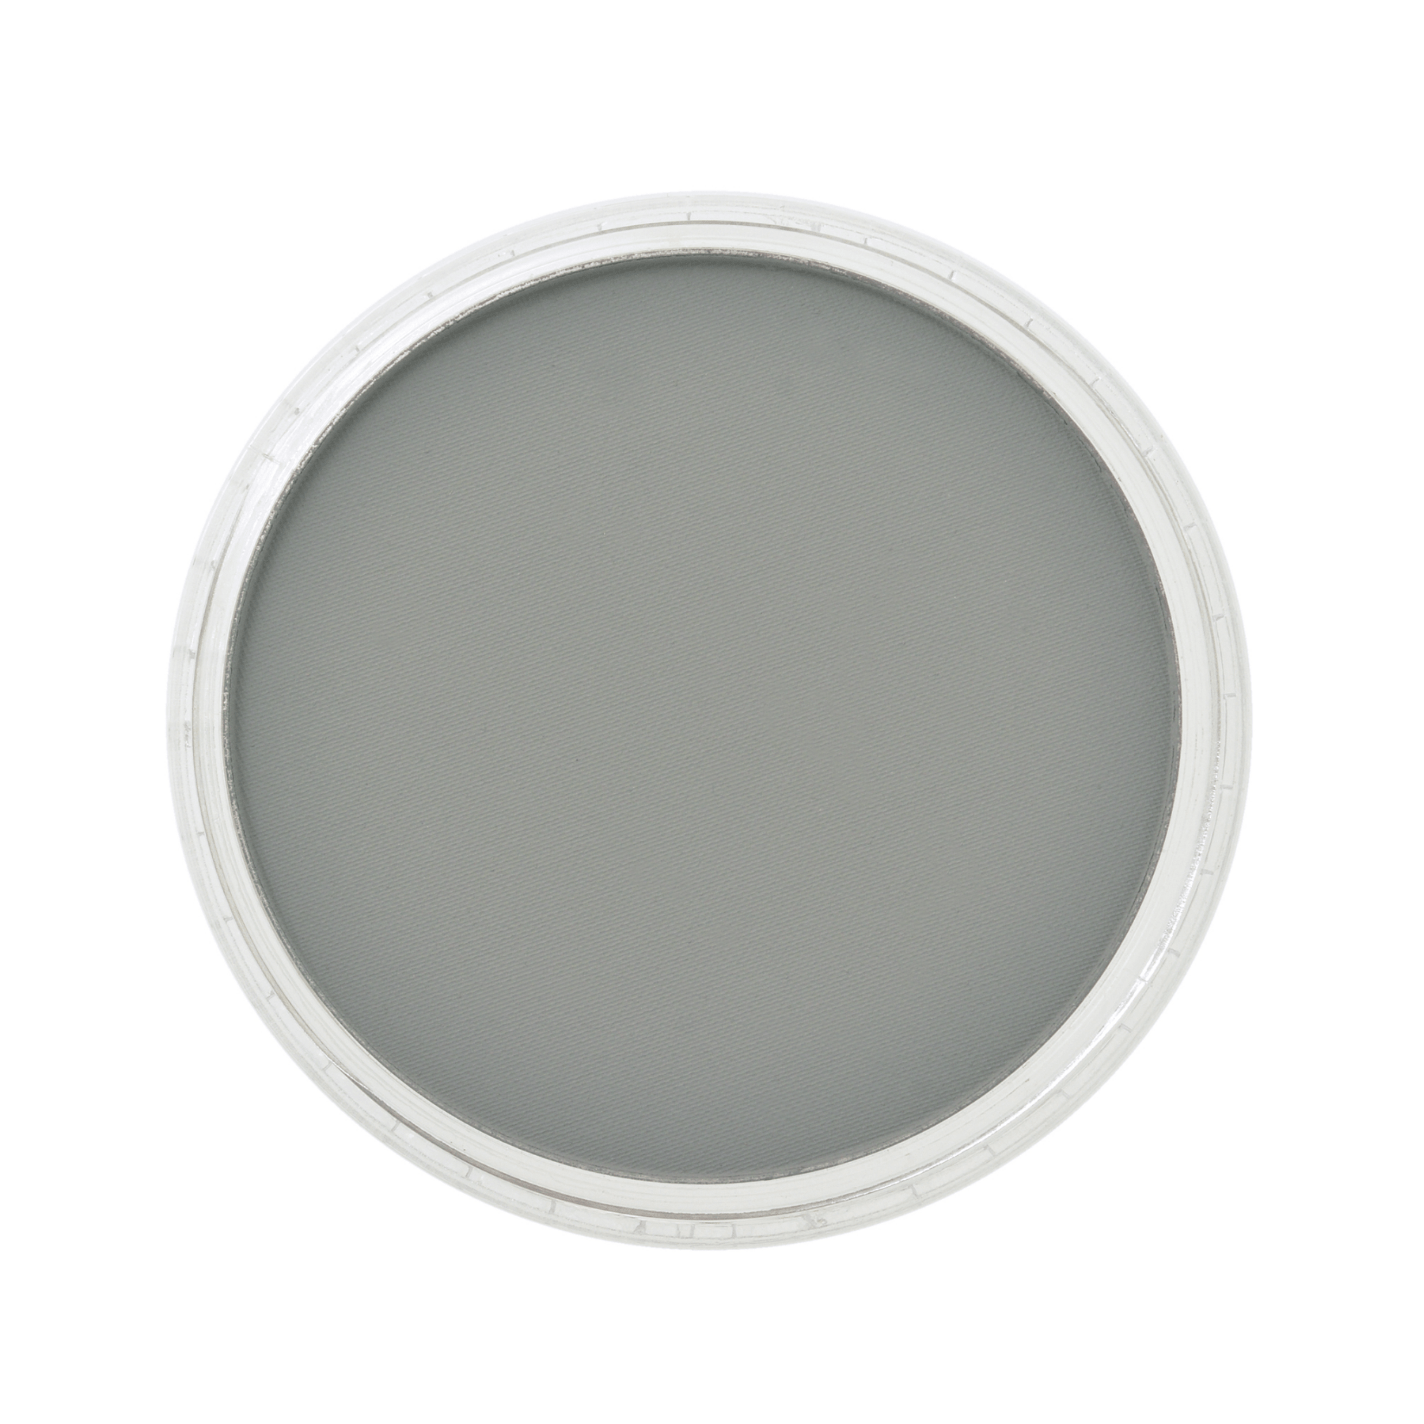 Panpastel Tørpastel 9ml Neutral Grey Shade 820.3